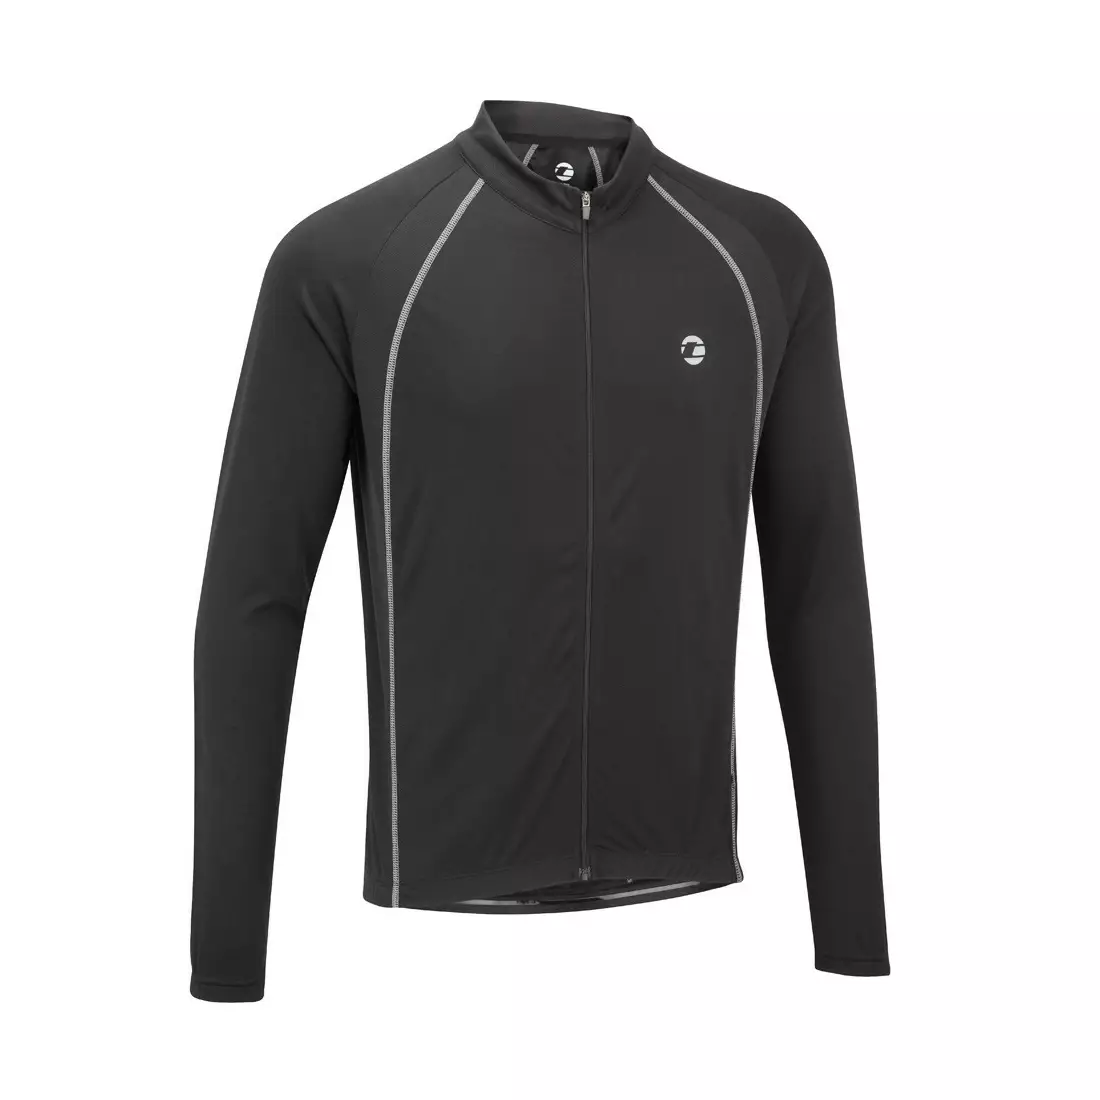 TENN OUTDOORS Pánský cyklistický dres Sprint s dlouhým rukávem, černý